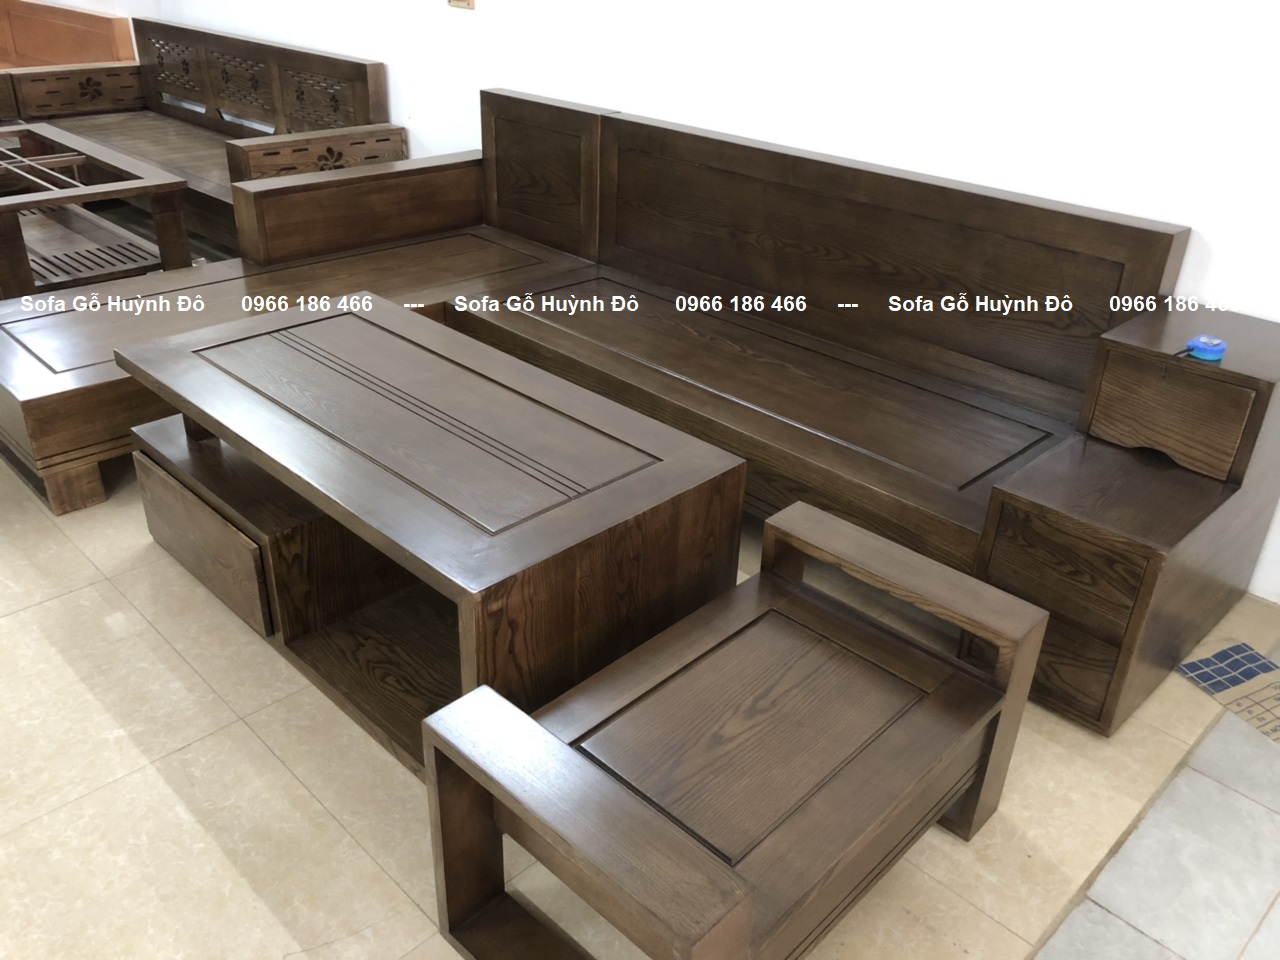 Đây là giải pháp hoàn hảo cho không gian phòng khách của bạn nếu bạn đang tìm kiếm một cái ghế gỗ dài và giá cả phải chăng. Với kiểu dáng cổ điển và chất liệu gỗ chắc chắn, ghế này sẽ mang lại vẻ đẹp và tính thẩm mỹ cho căn phòng của bạn. Hãy nhấp chuột vào hình ảnh để xem chi tiết sản phẩm!